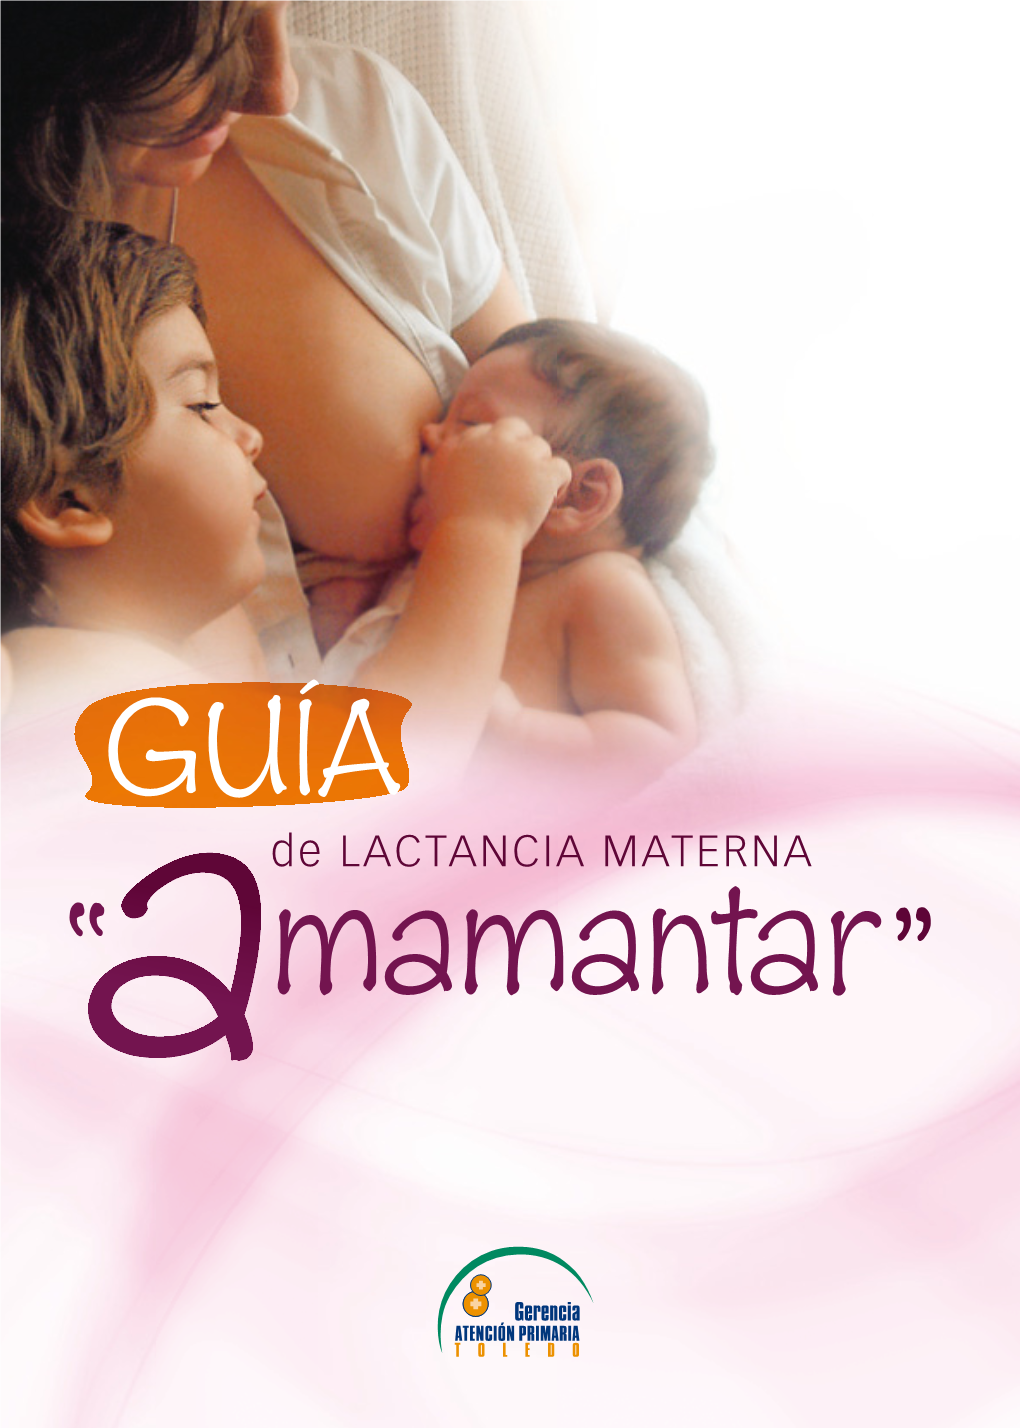 Guía De Lactancia Materna: “Amamantar” Esta Guía Ha Sido Consensuada Con Madres Lactantes Del Área De Toledo